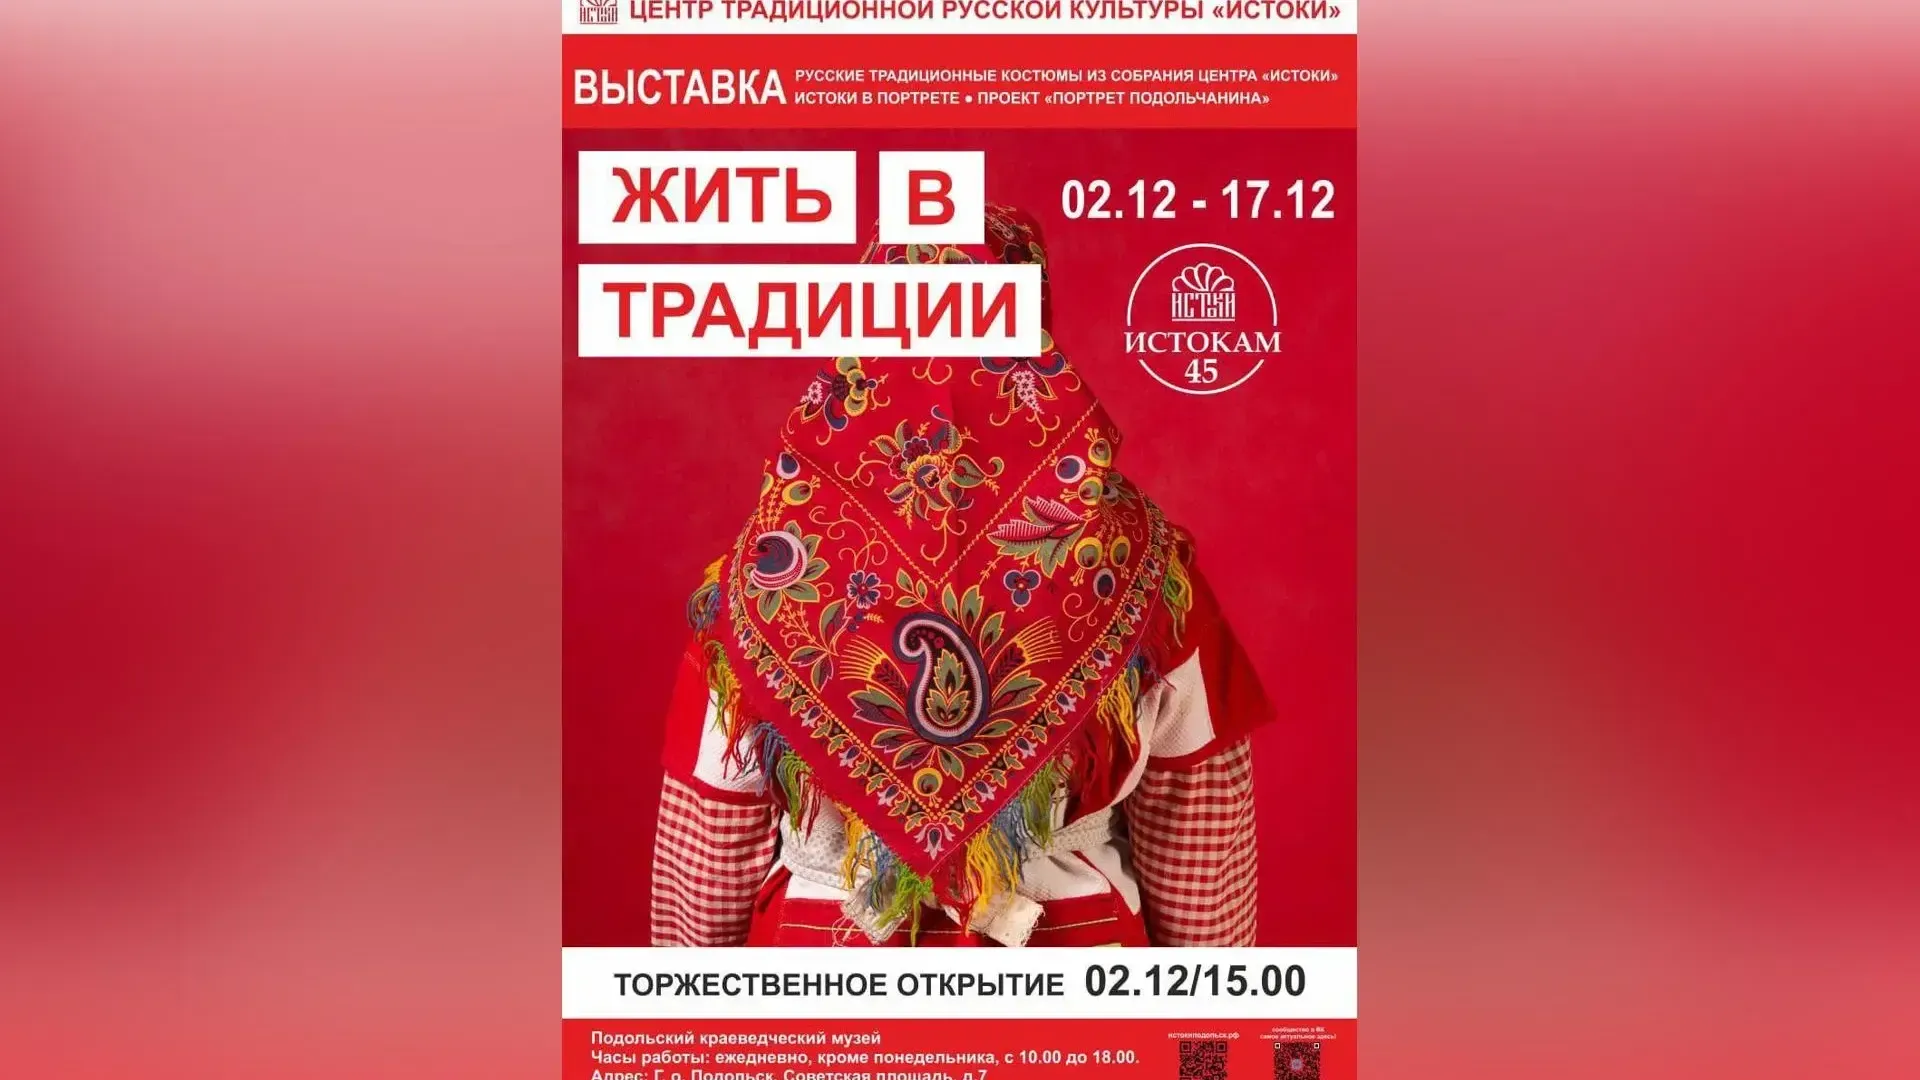 Со 2 декабря в Подольске начнет действовать выставка «Жить в традиции»